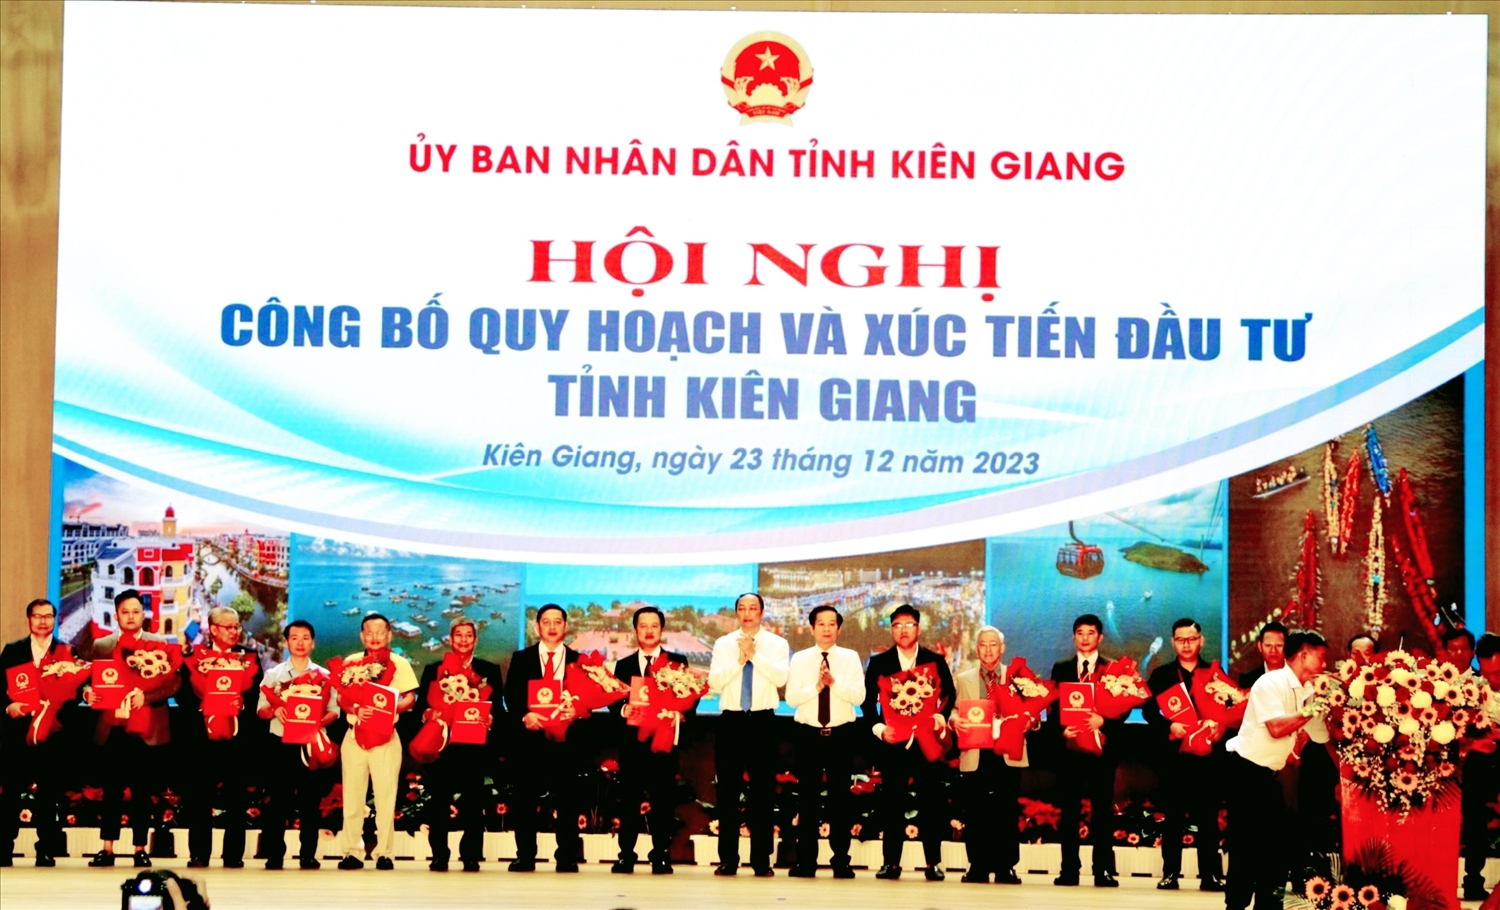 Lãnh đạo tỉnh Kiên Giang đã trao Chủ trương đầu tư và biên bản nghi nhớ đến các nhà đầu tư